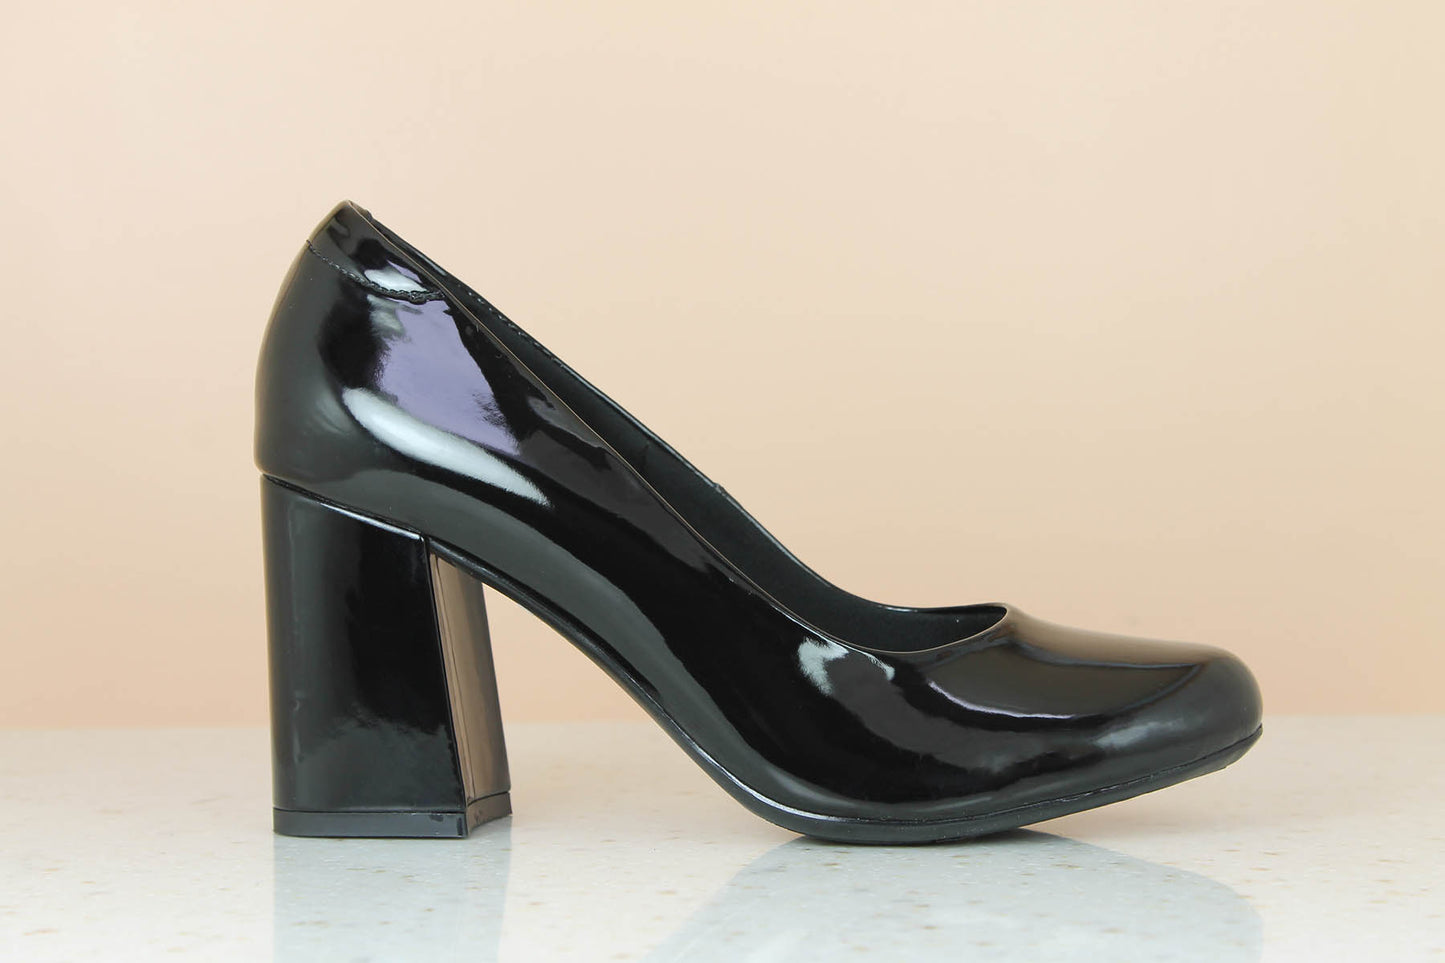 BLOCK HEEL PATTENT PUMP SHOES - BLACK-Women's Pump Shoes-Inc5 Shoes